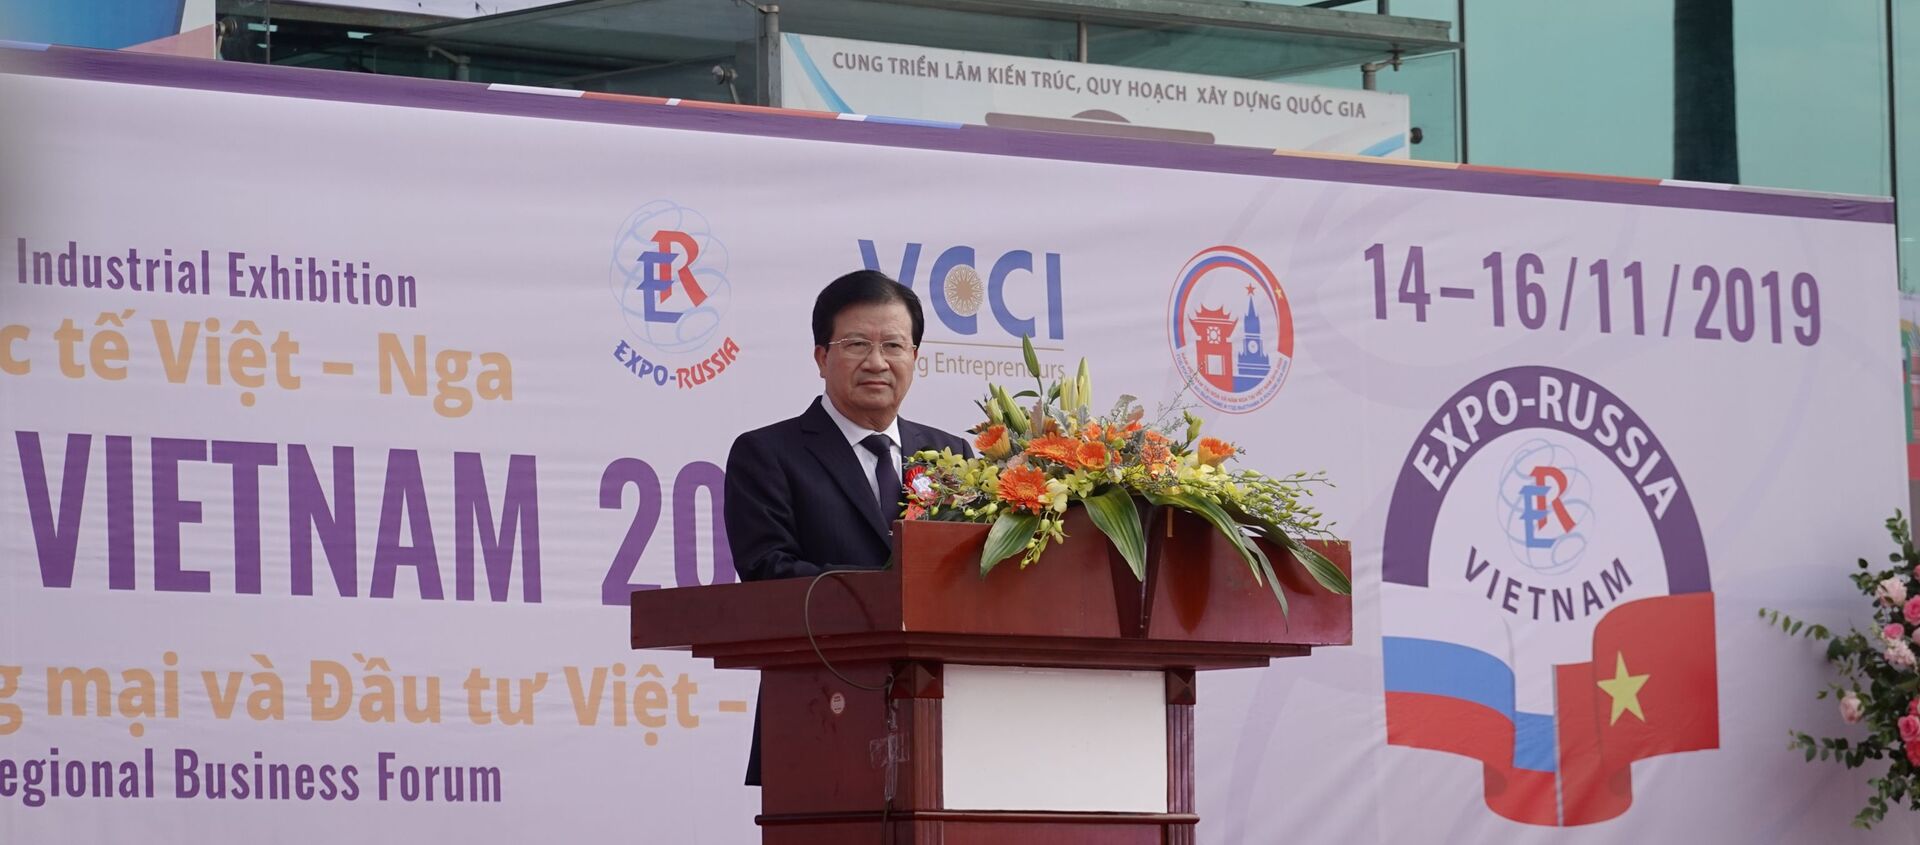 Phó thủ tướng Trịnh Đình Dũng phát biểu tại Khai mạc Expo - Russia Viet Nam 2019 - Sputnik Việt Nam, 1920, 15.11.2019